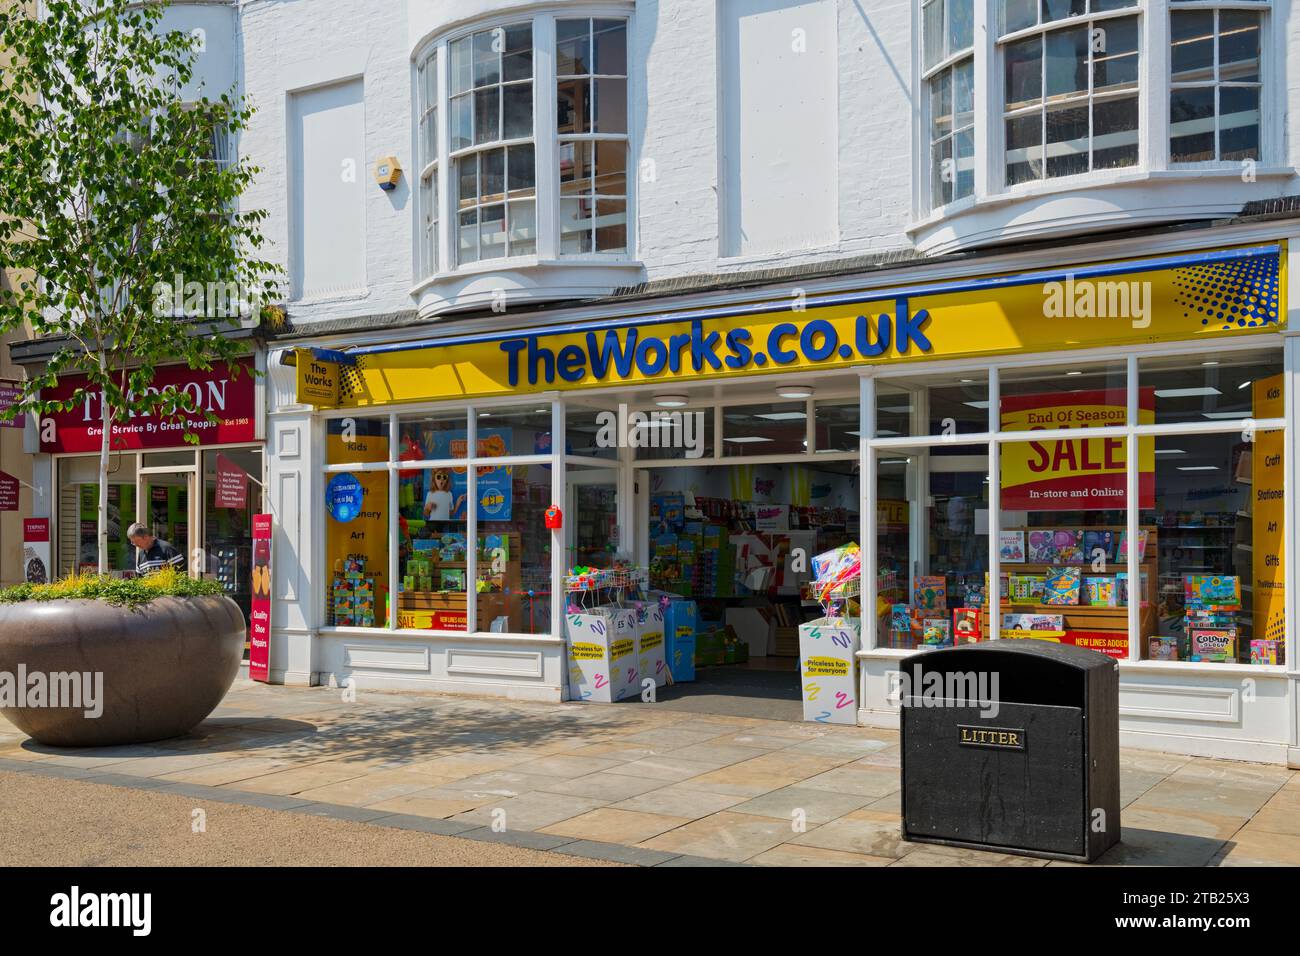 The Works magasin de livres et de papeterie de grande rue Westborough Scarborough North Yorkshire Angleterre Royaume-Uni GB Grande-Bretagne Banque D'Images